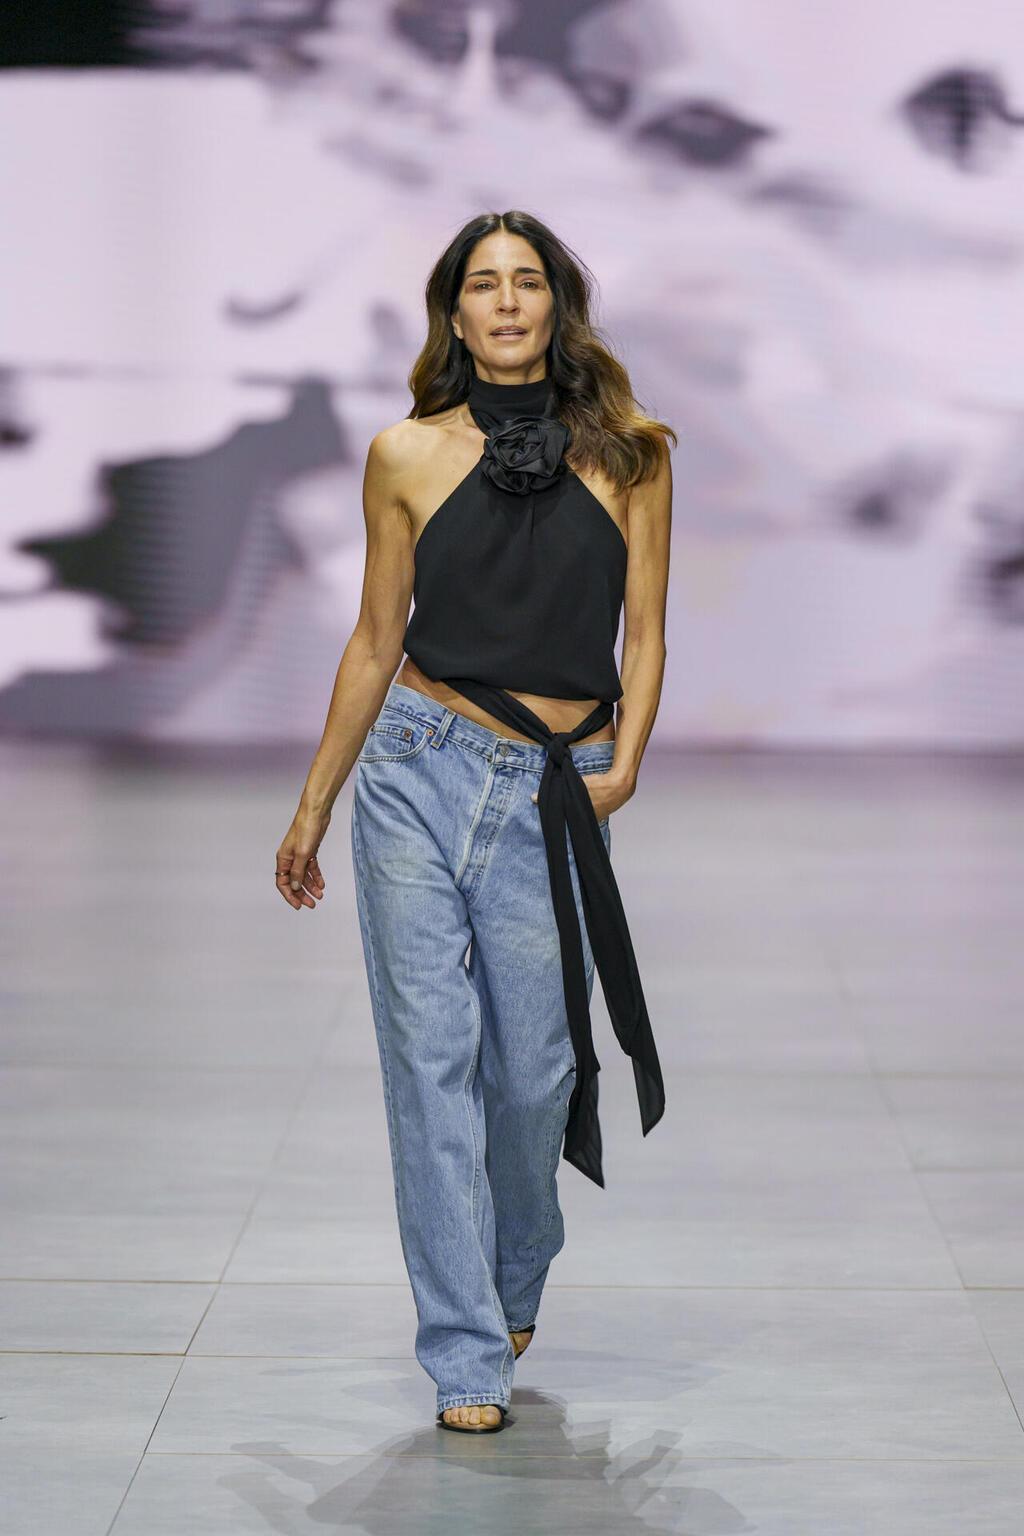 סיגל שחמון בתצוגה של עידן לרוס בשבוע האופנה קורנית תל אביב 2023